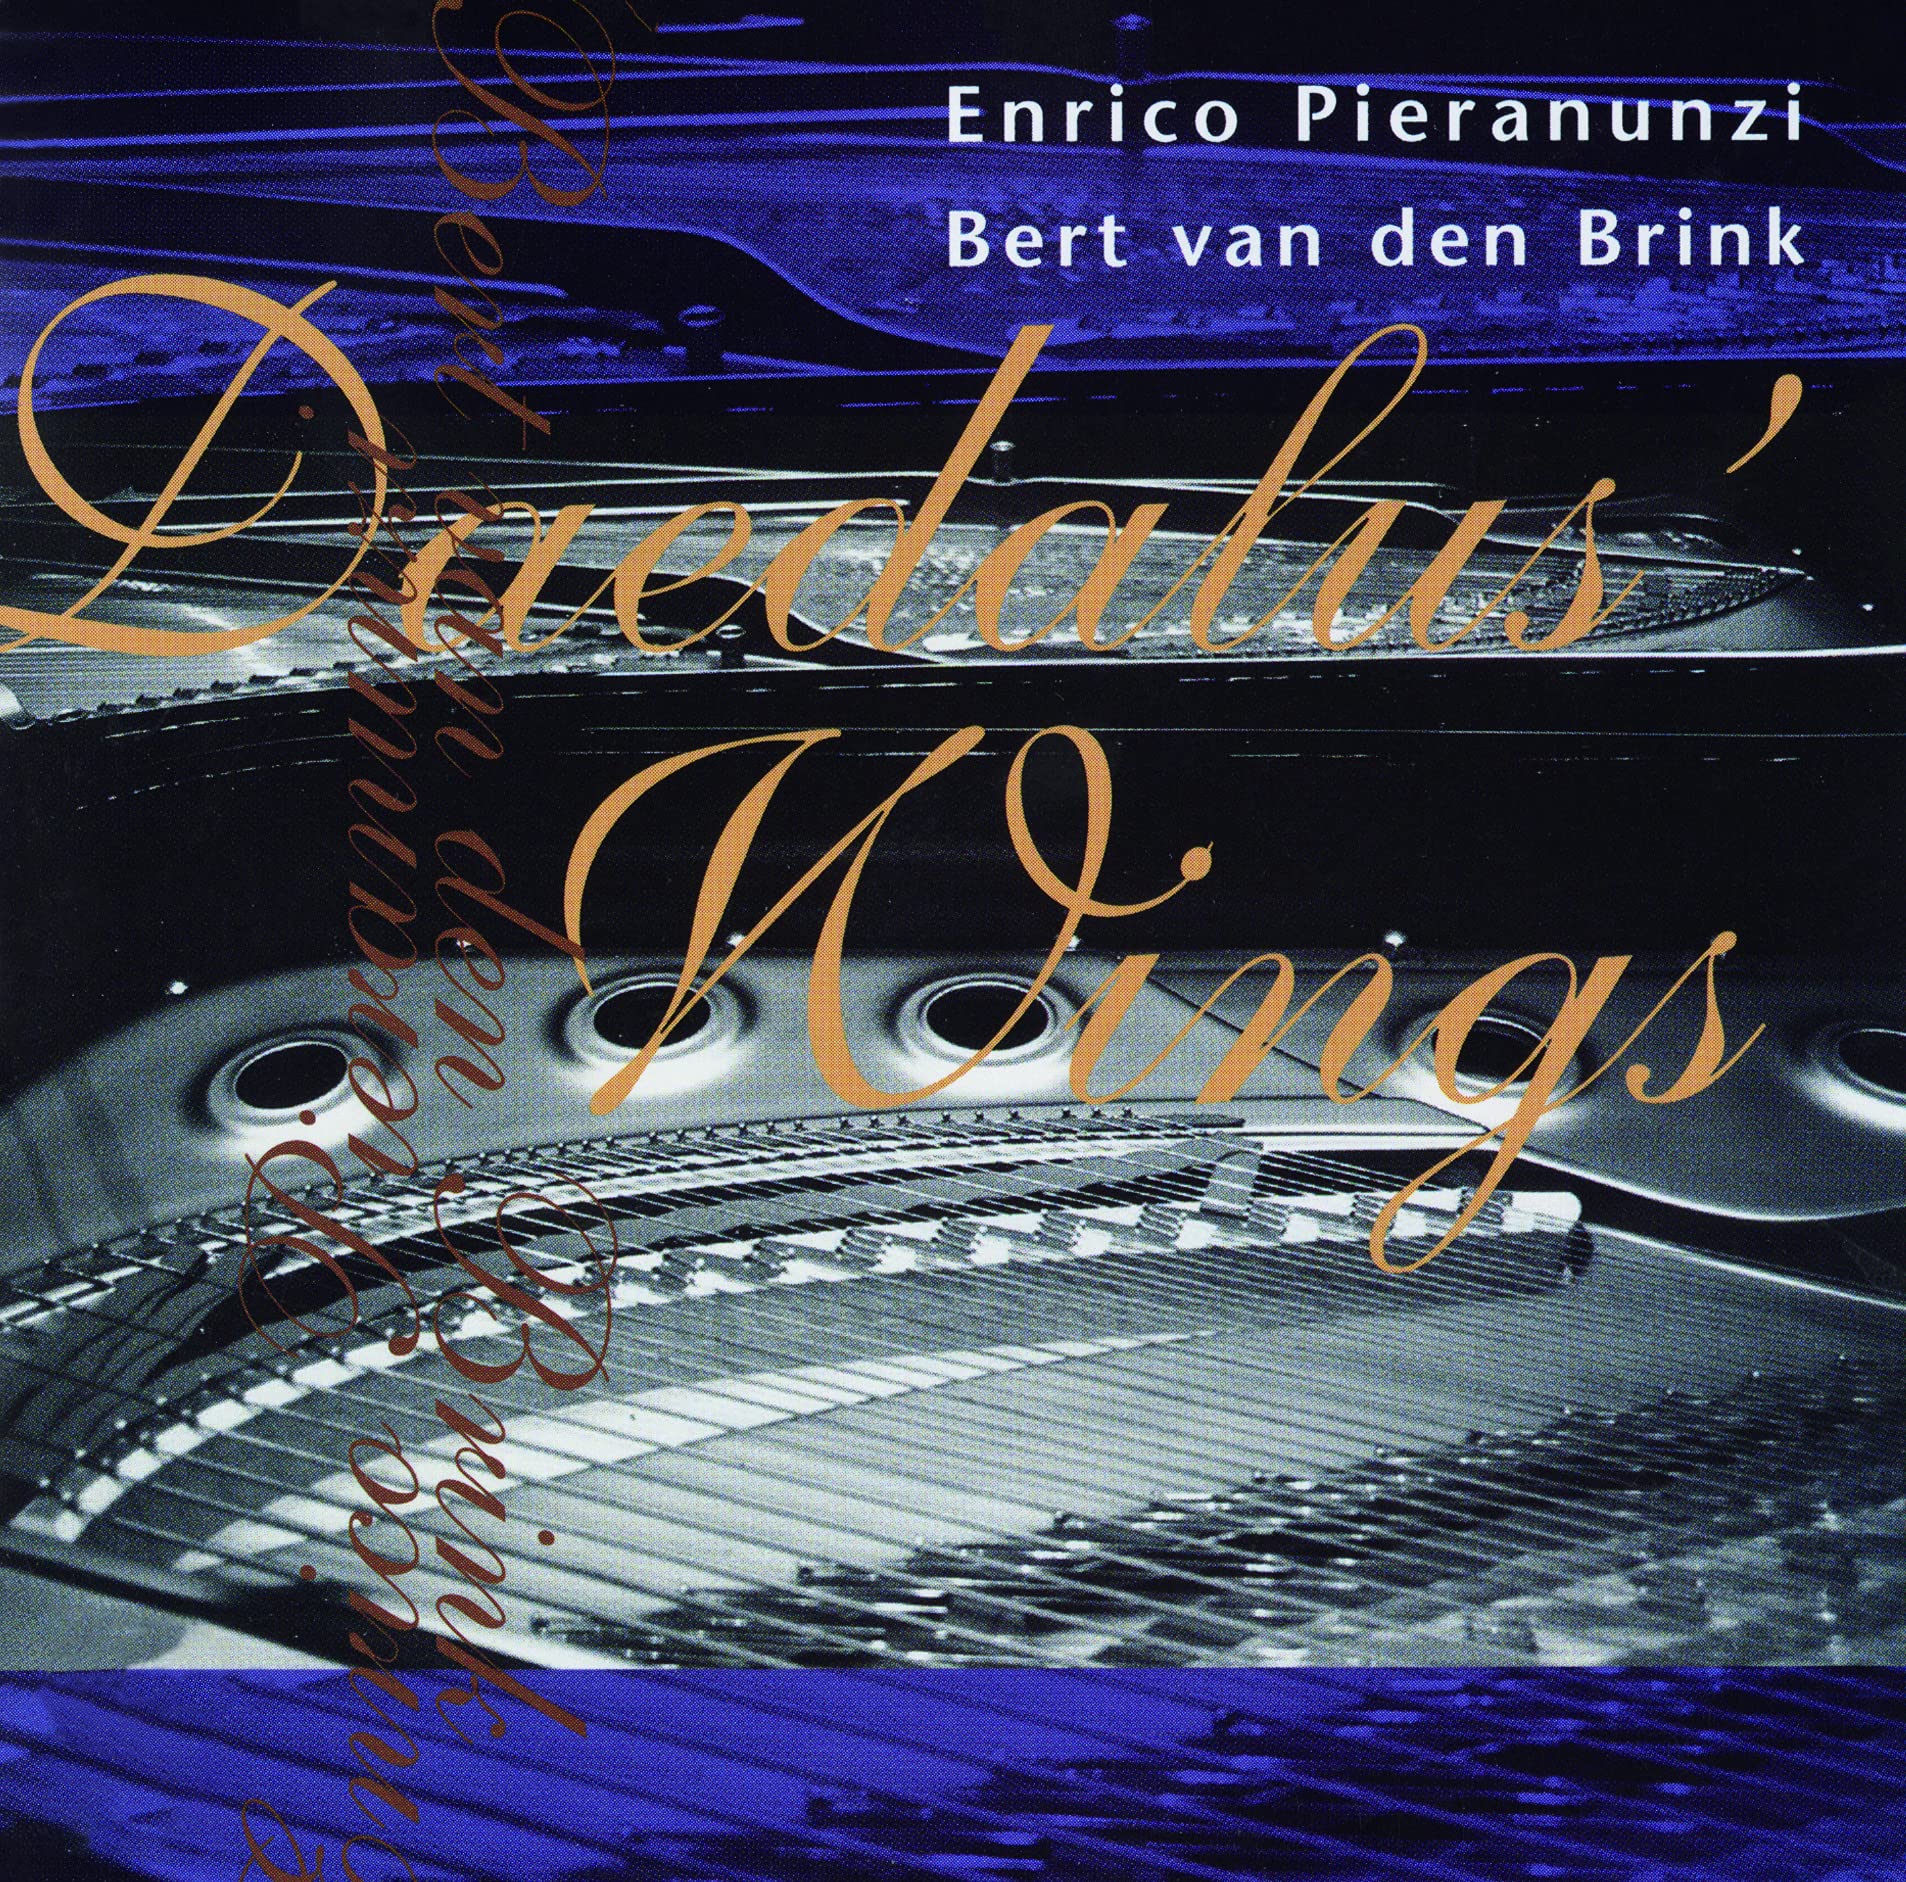 Audio Cd Enrico Pieranunzi - Daedalus Wings NUOVO SIGILLATO, EDIZIONE DEL 02/07/2021 SUBITO DISPONIBILE